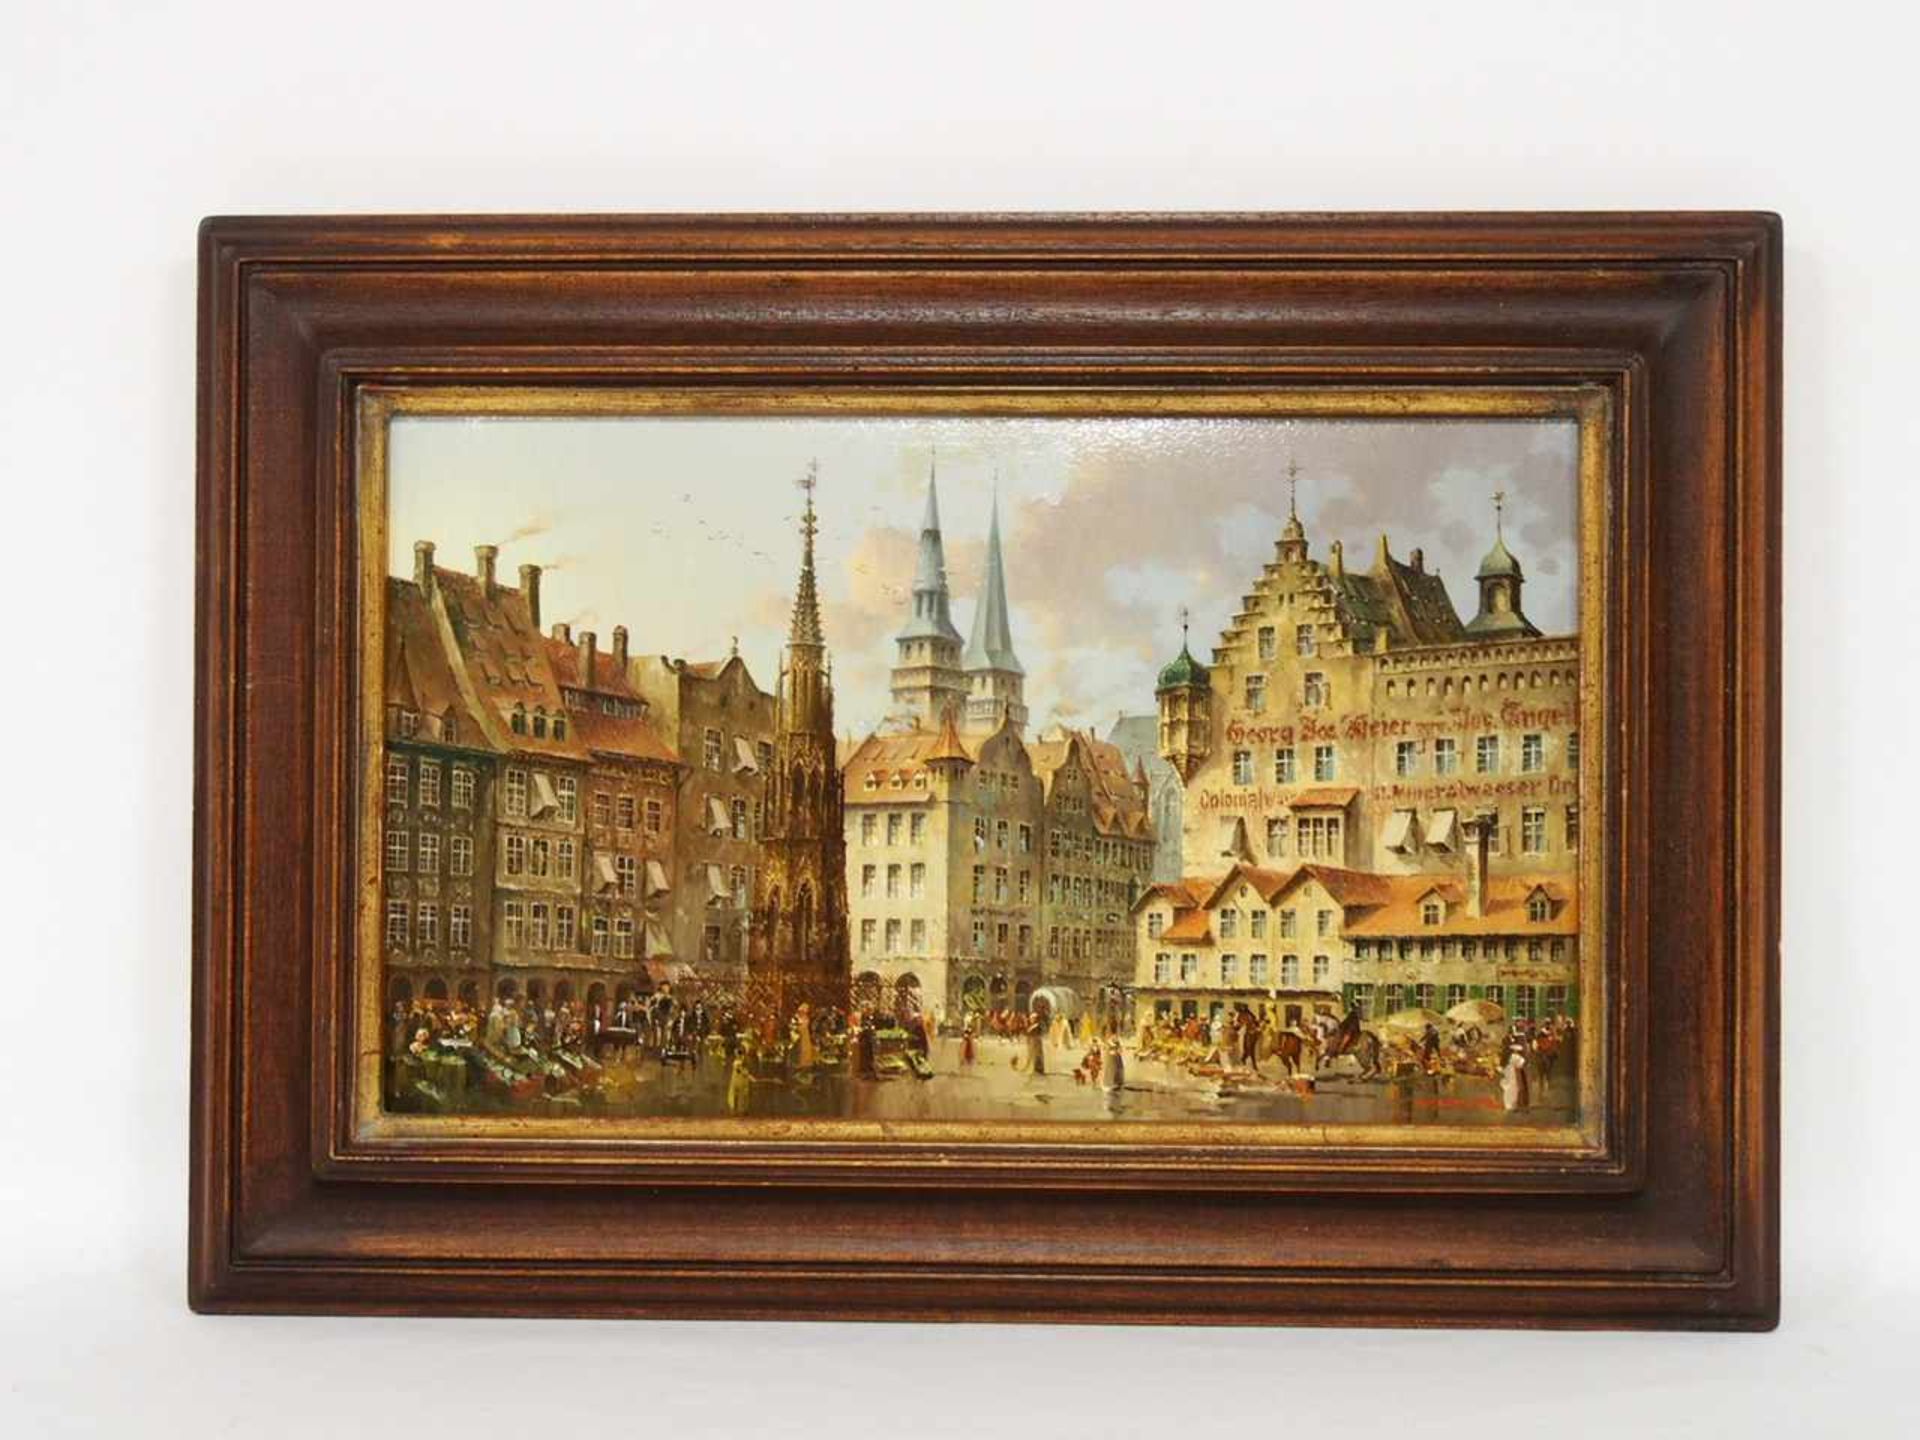 SCHOLTZ, Heinz*1925Marktplatz von NürnbergÖl auf Kupfer, signiert unten rechts, 23 x 38 cm, Rahmen - Image 2 of 2